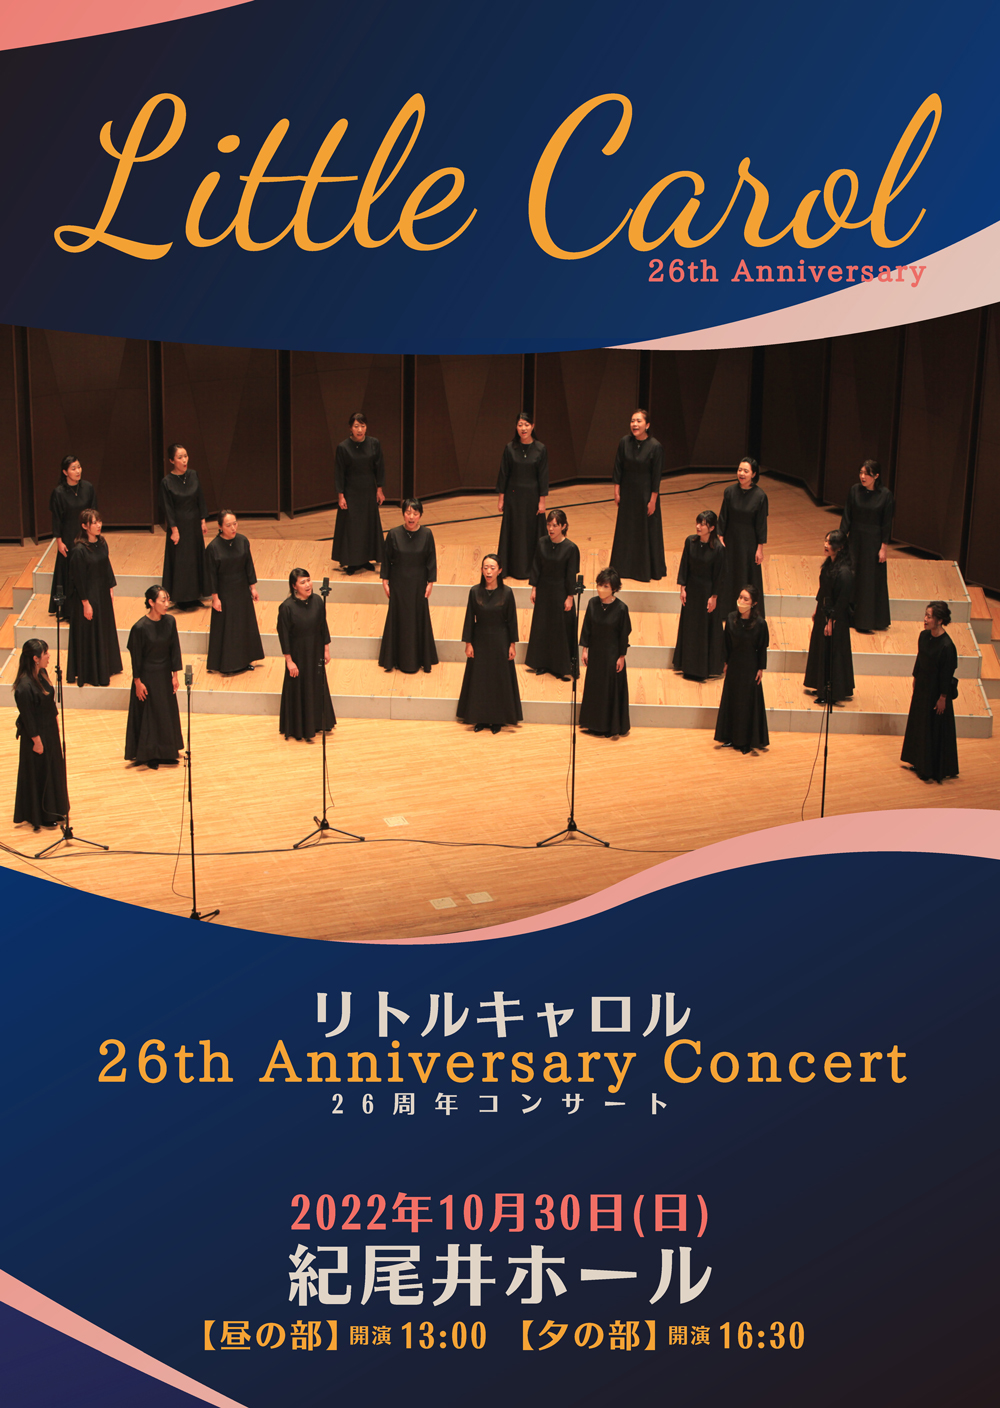 【昼公演】Little Carol / リトルキャロル「26周年コンサート」